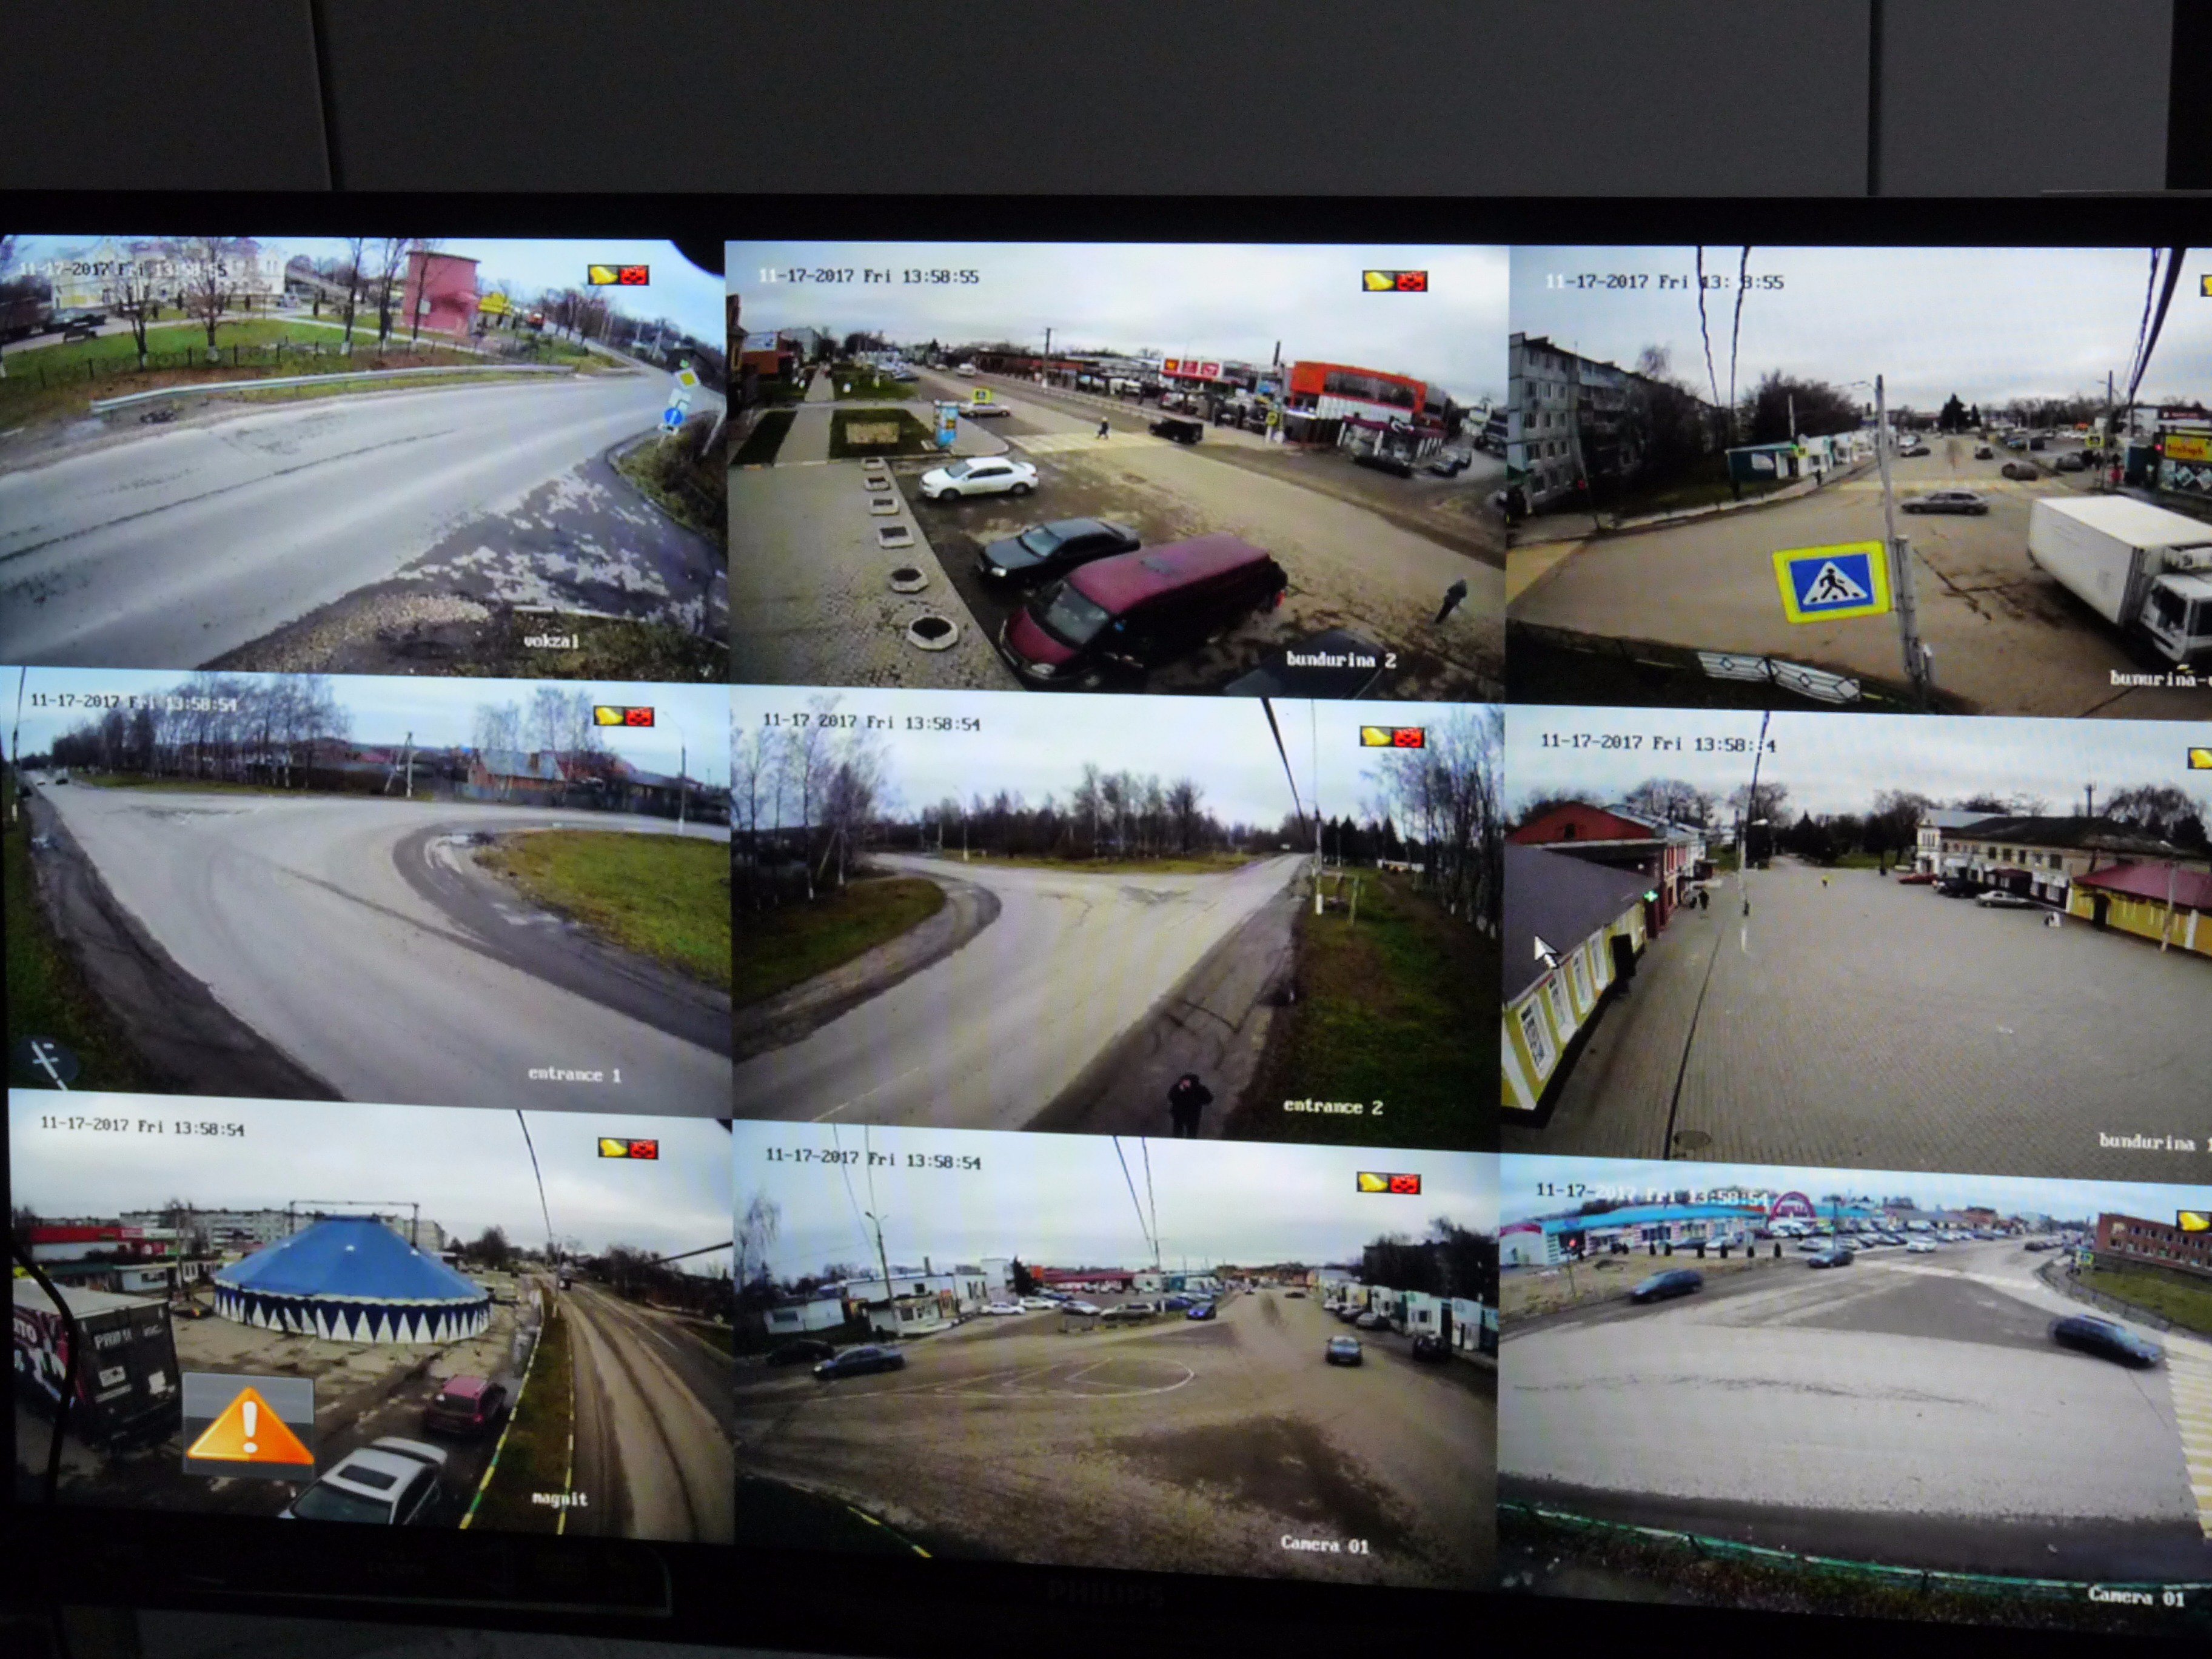 Веб камеры наблюдают. Изображение с камеры видеонаблюдения. Экран видеонаблюдения. Экран камеры наблюдения.